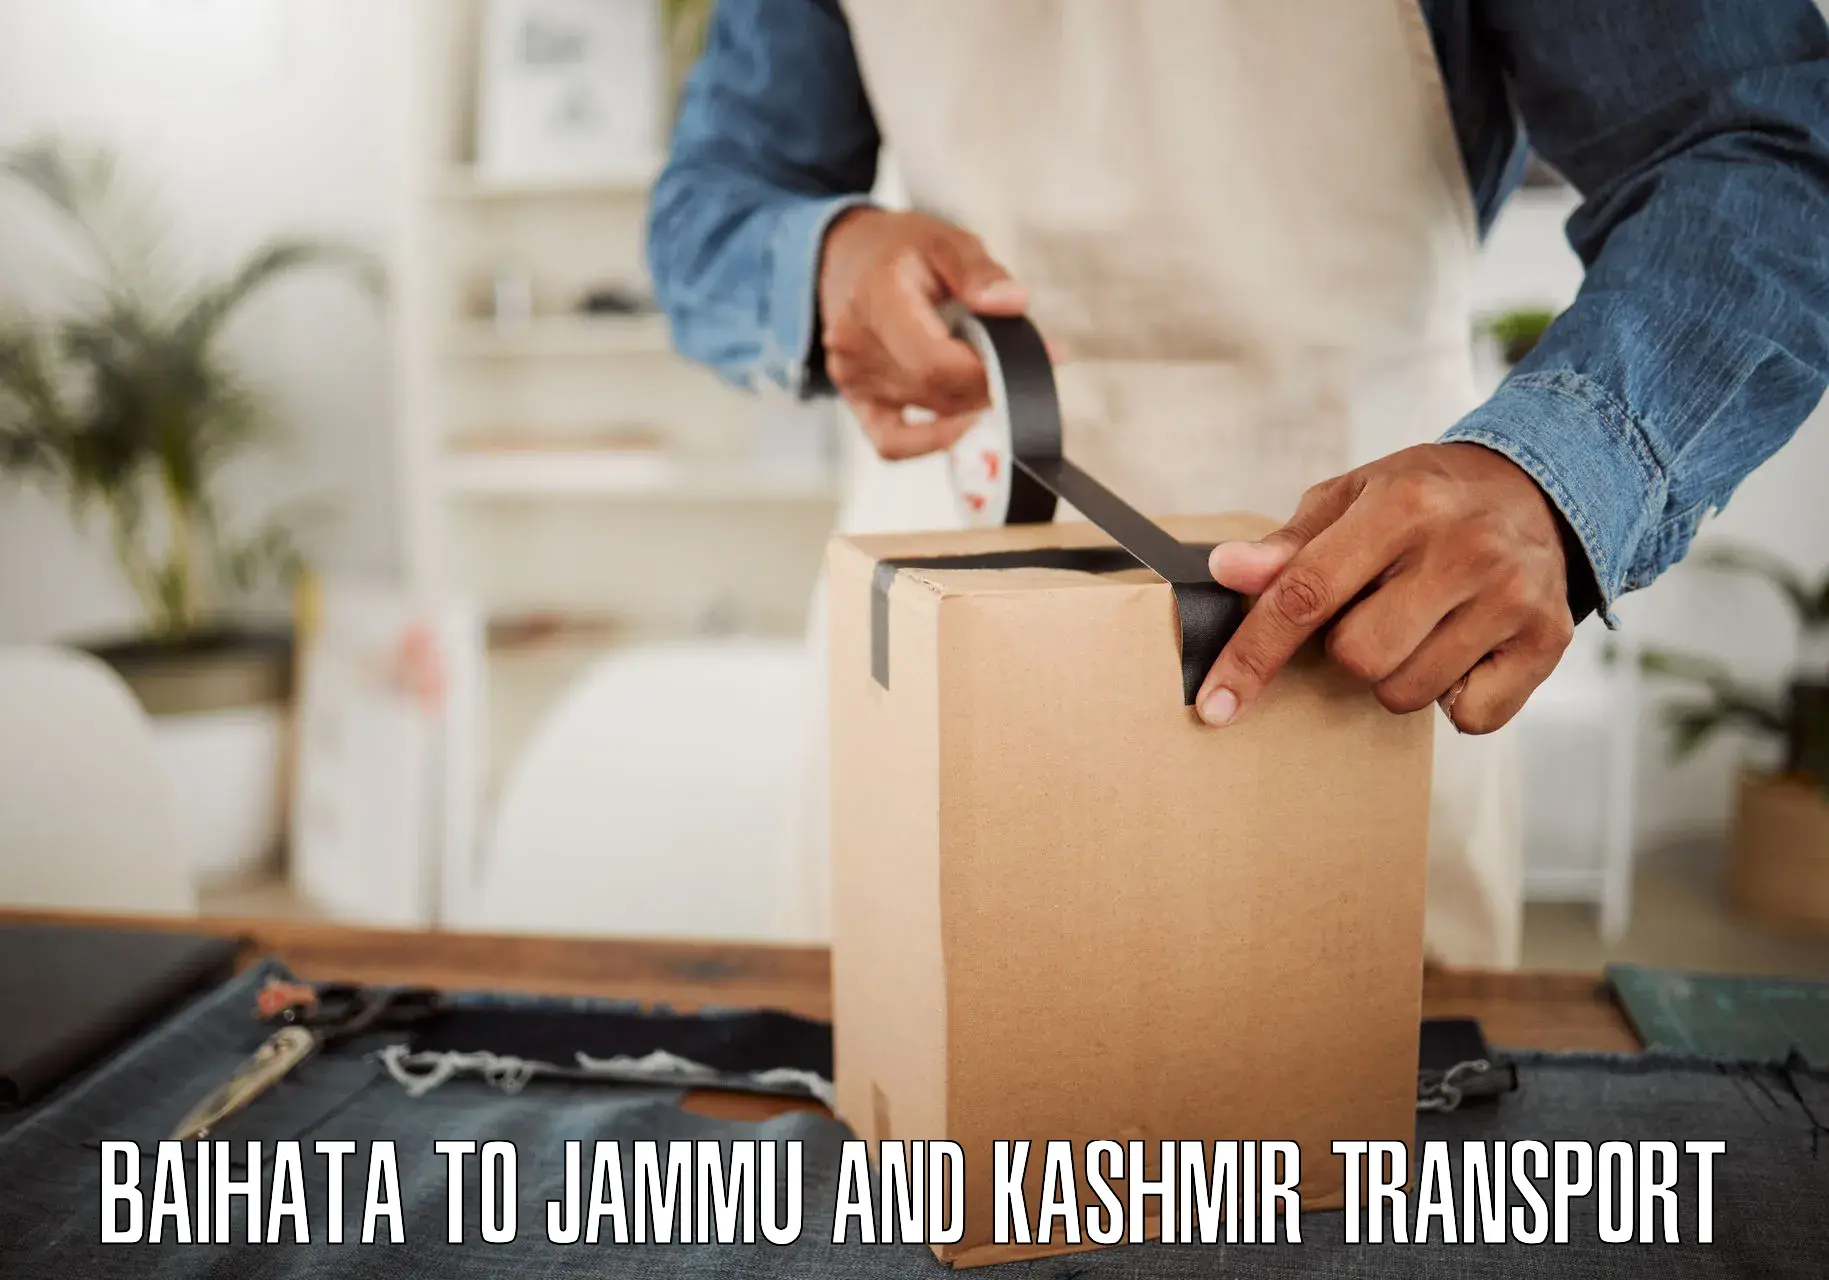 Lorry transport service Baihata to Jammu and Kashmir